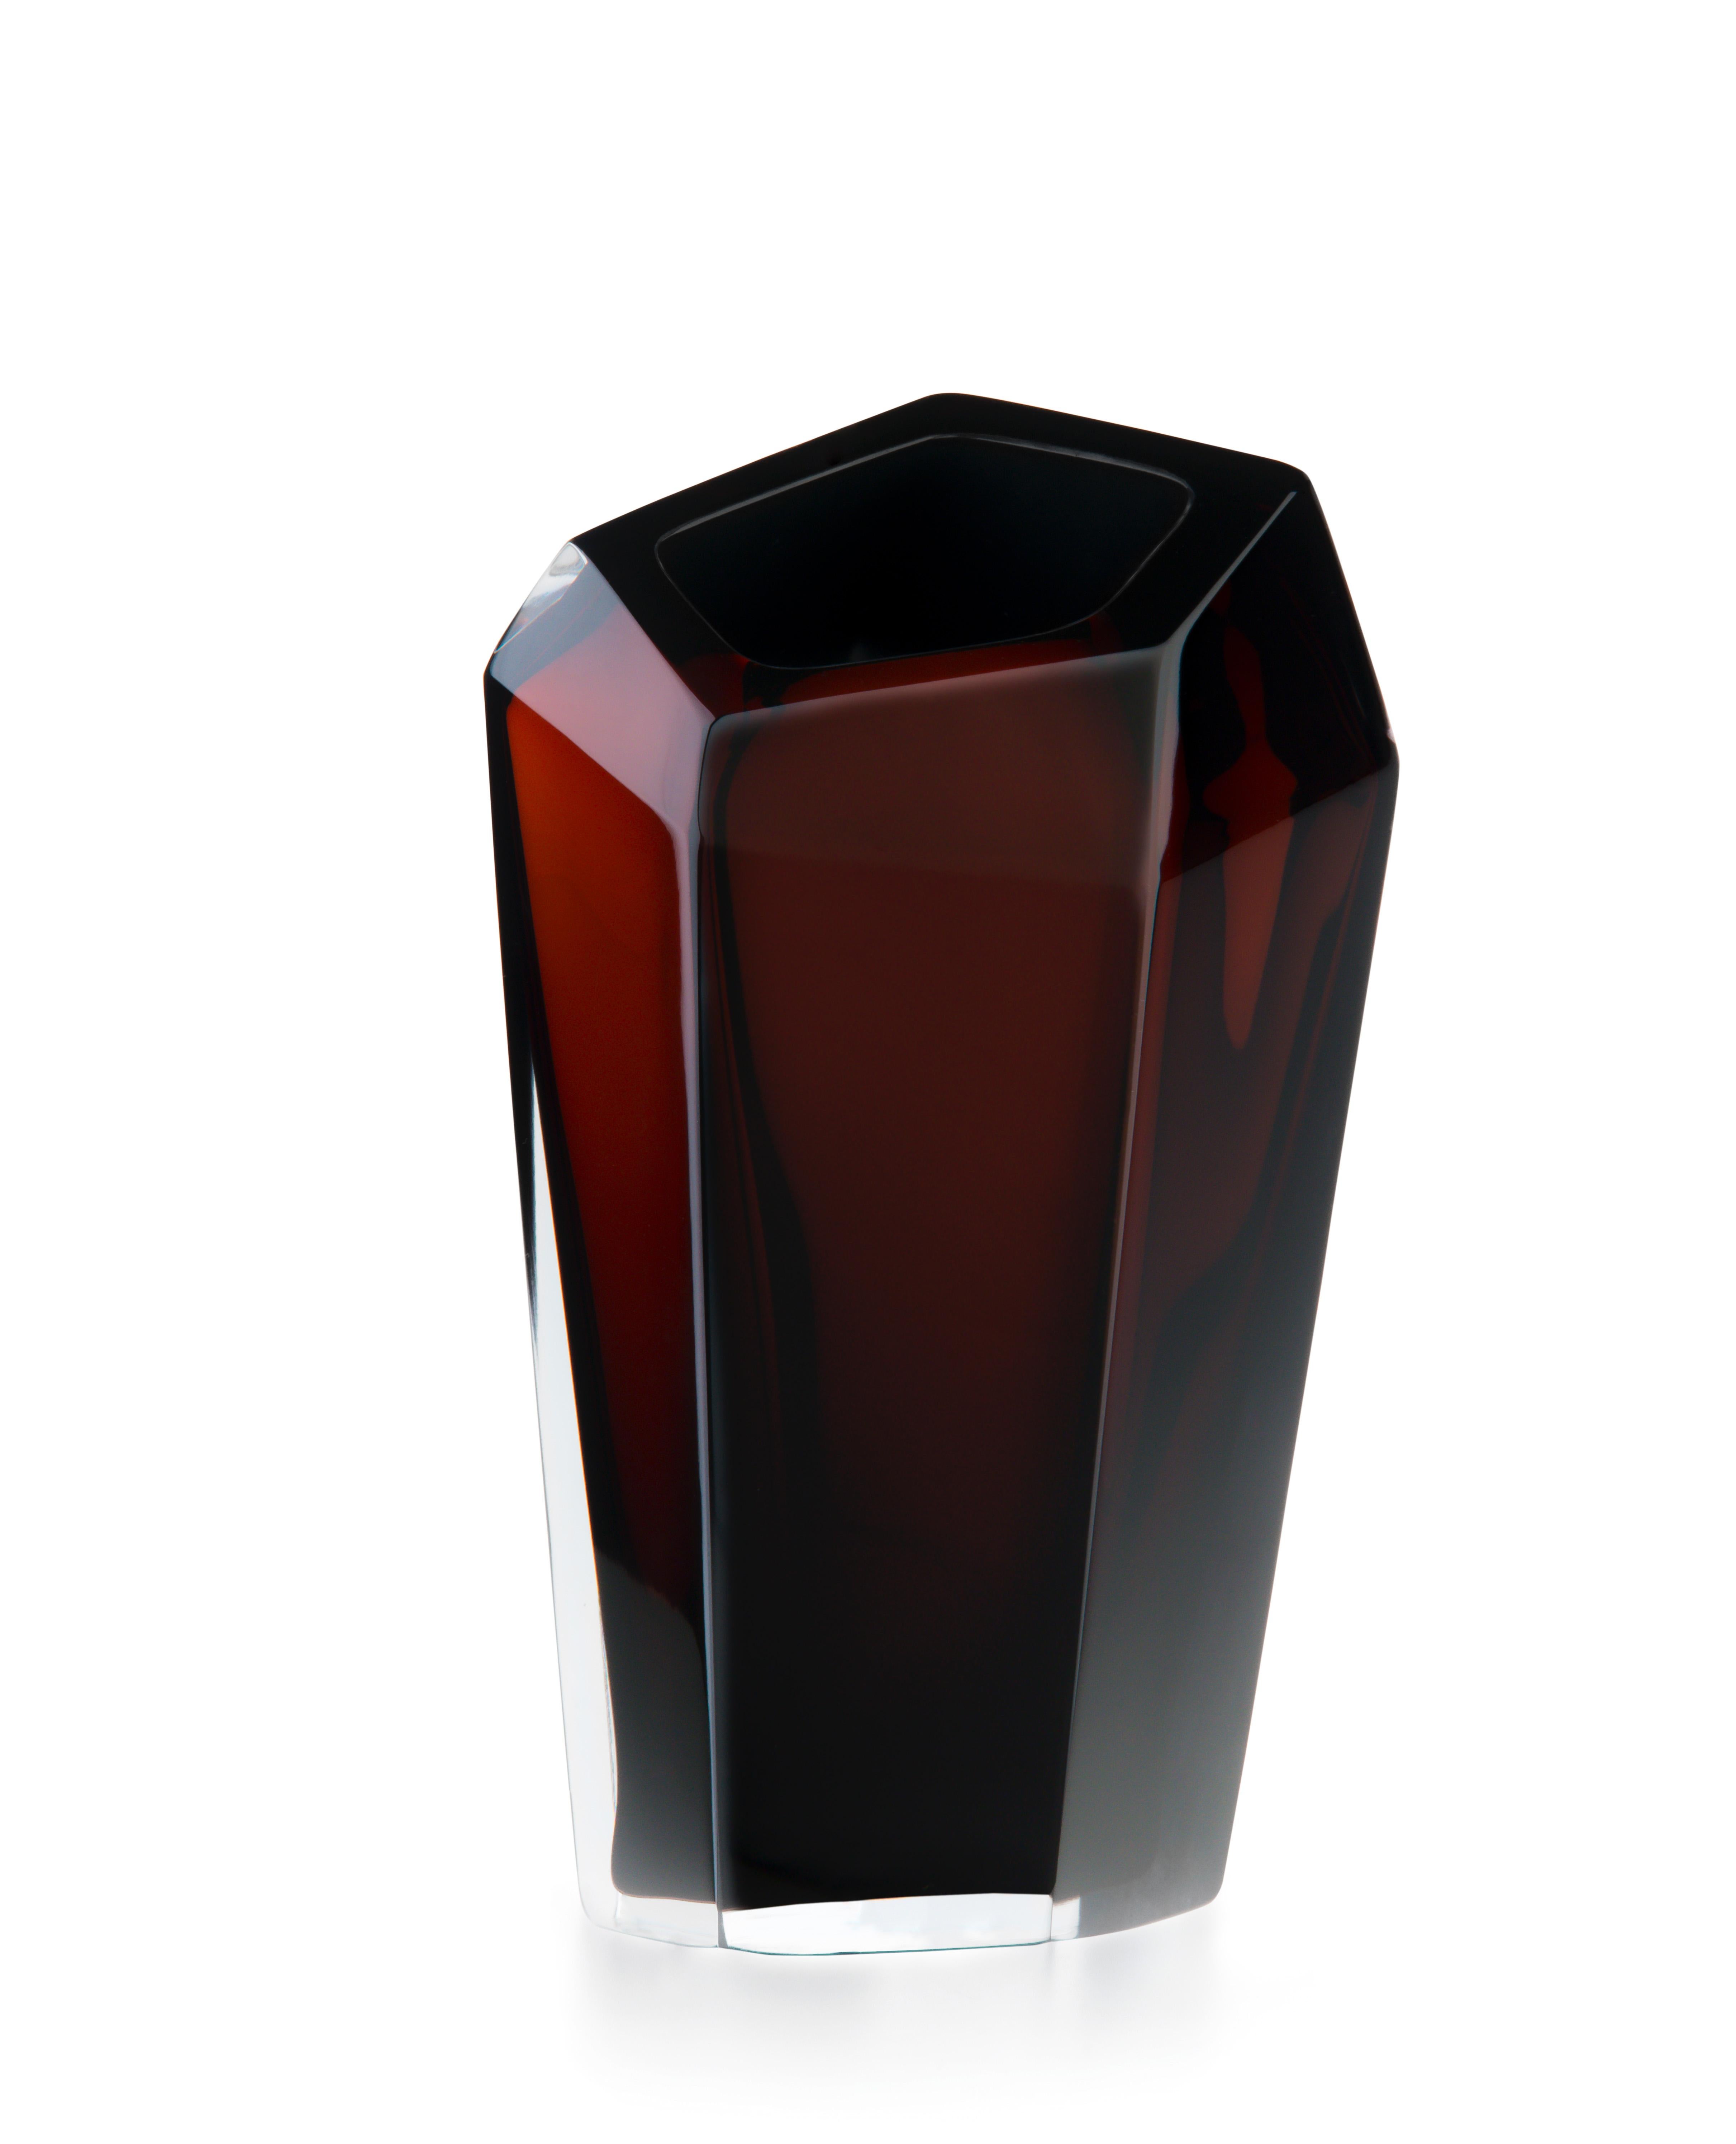 Grand vase brun Kastle de Purho
Dimensions : D20 x H47cm
Matériaux : Verre
D'autres couleurs et dimensions sont disponibles.

Purho est un nouveau protagoniste du design made in Italy, un travail de synthèse, une recherche qui dure depuis des